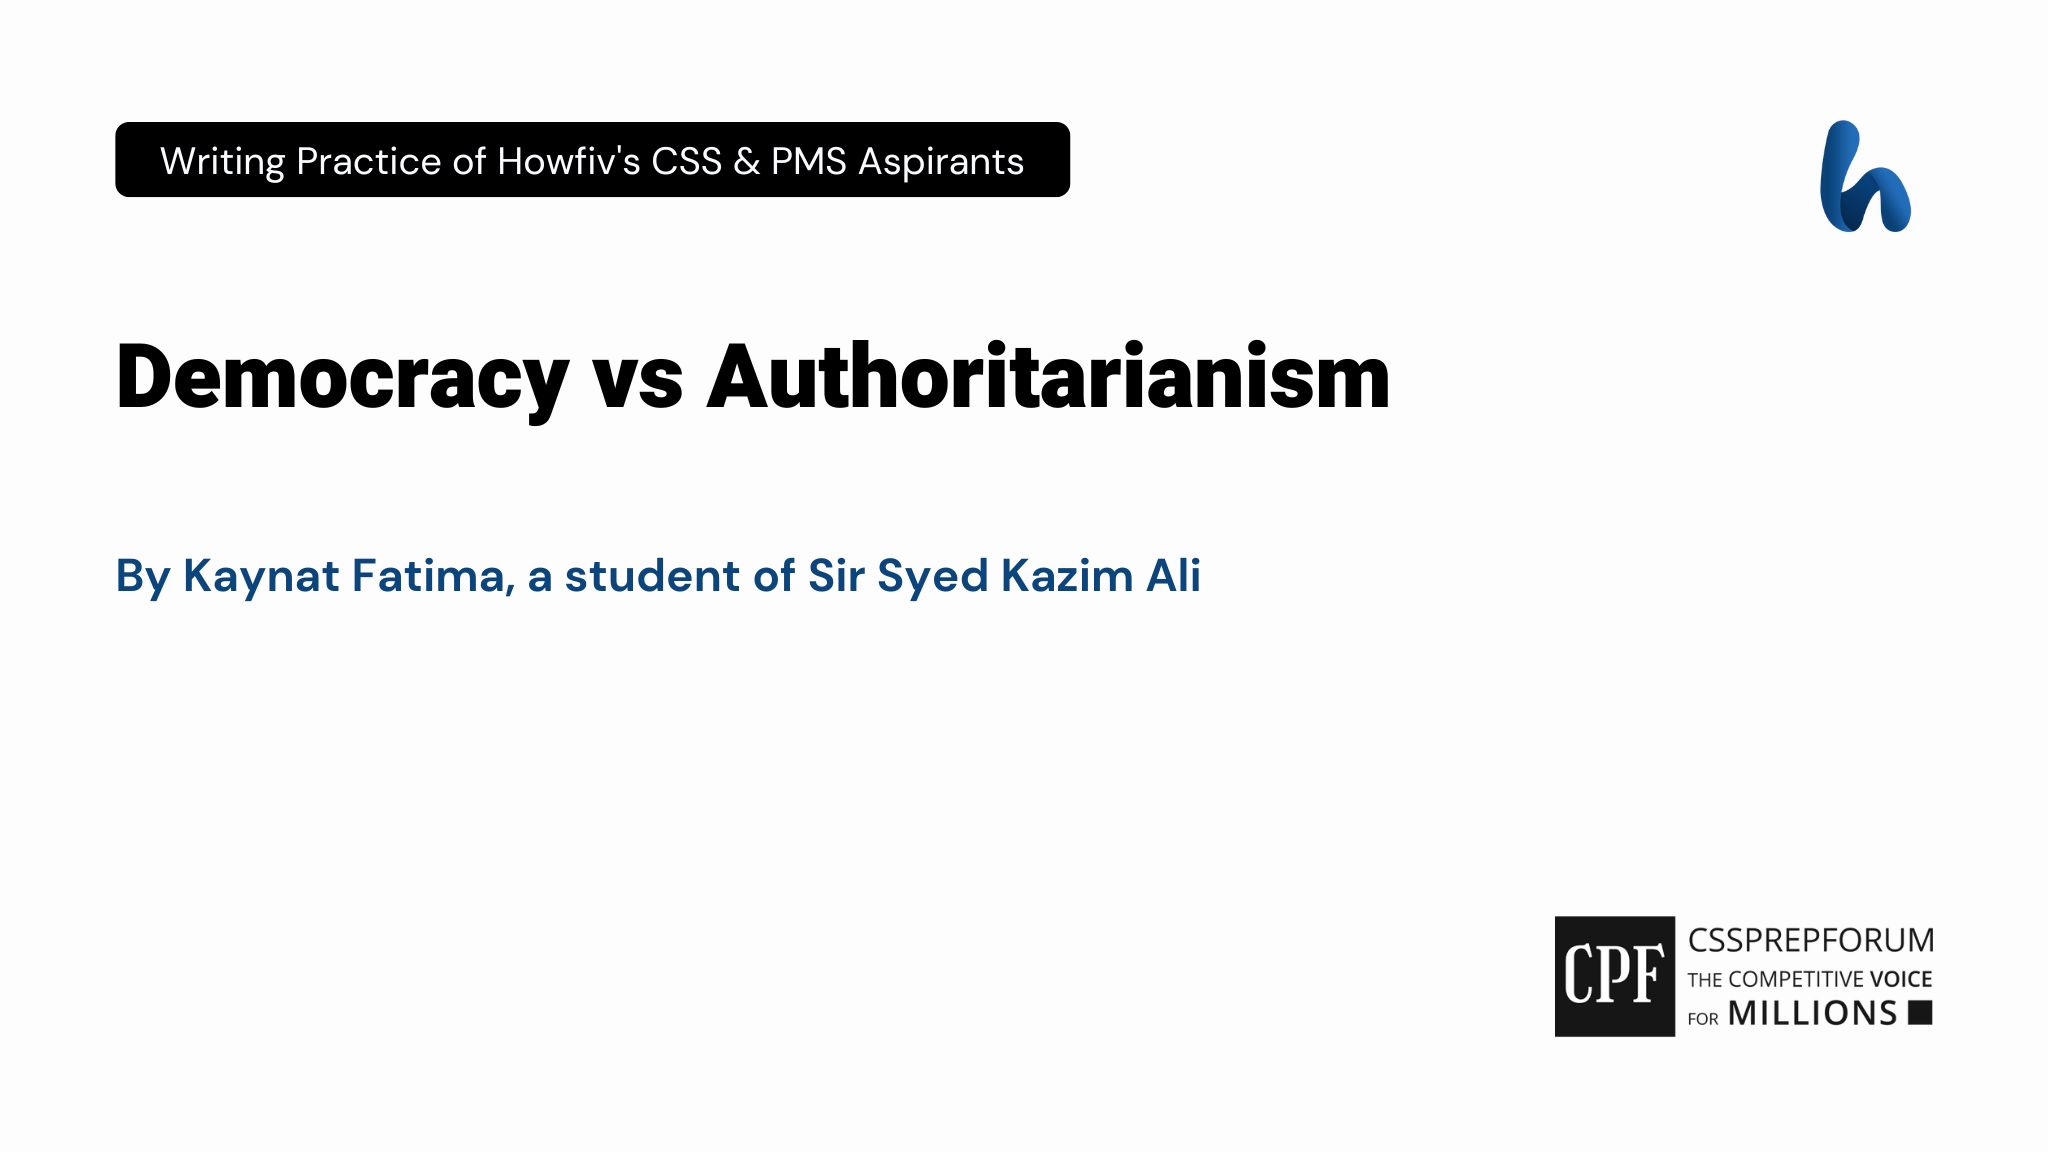 Democracy vs Authoritarianism